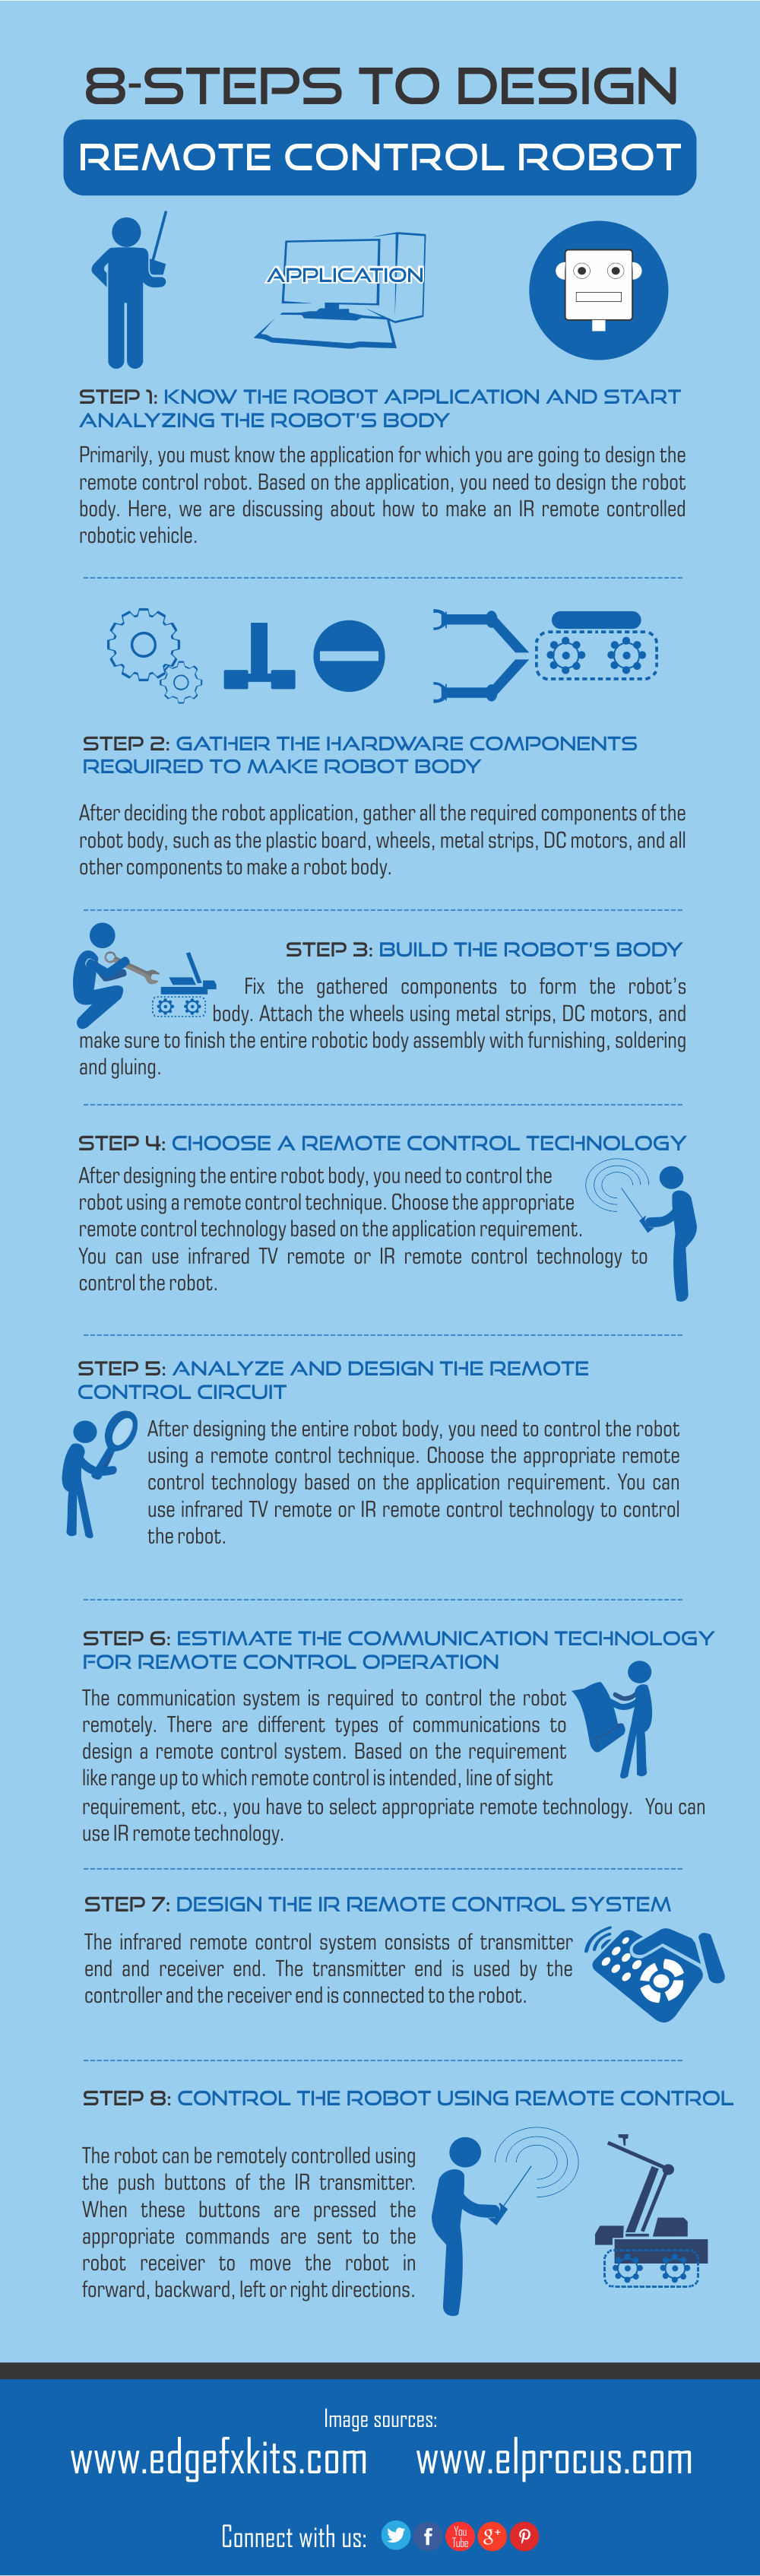 Infográfico: 8 etapas para fazer um veículo robótico de controle remoto